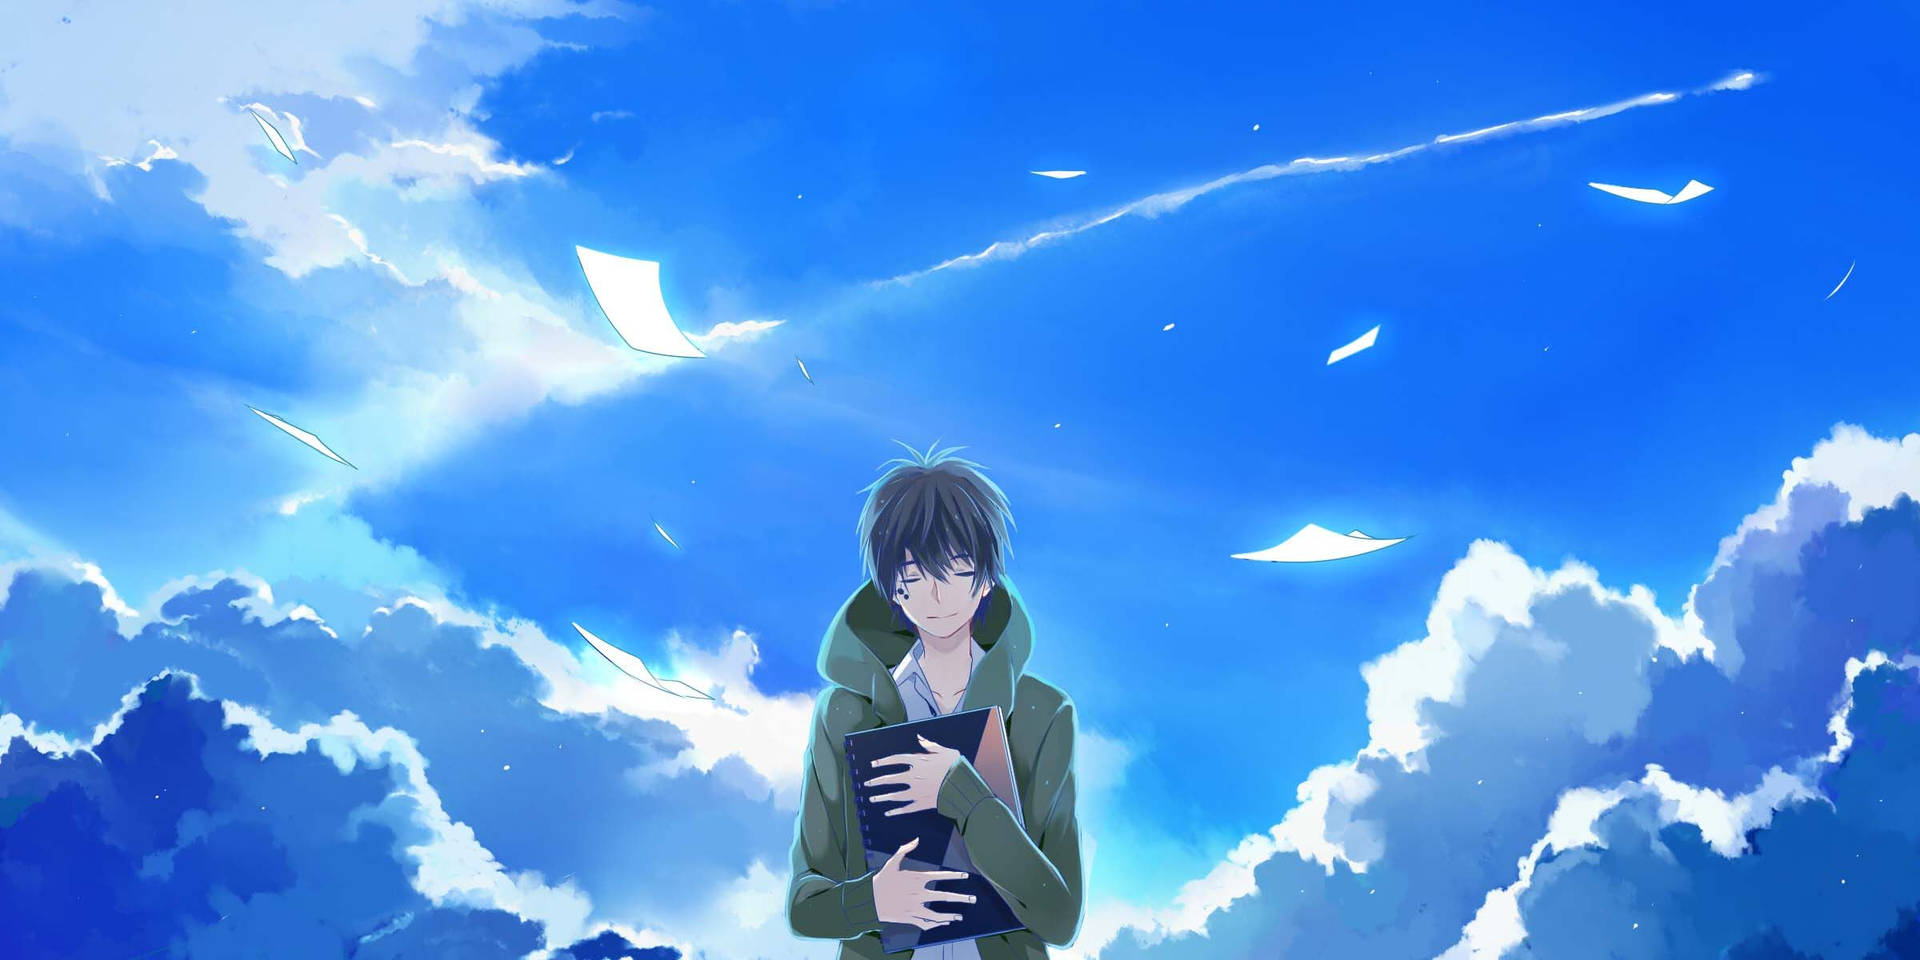 Chicostristes De Anime Solos Bajo El Cielo Azul. Fondo de pantalla